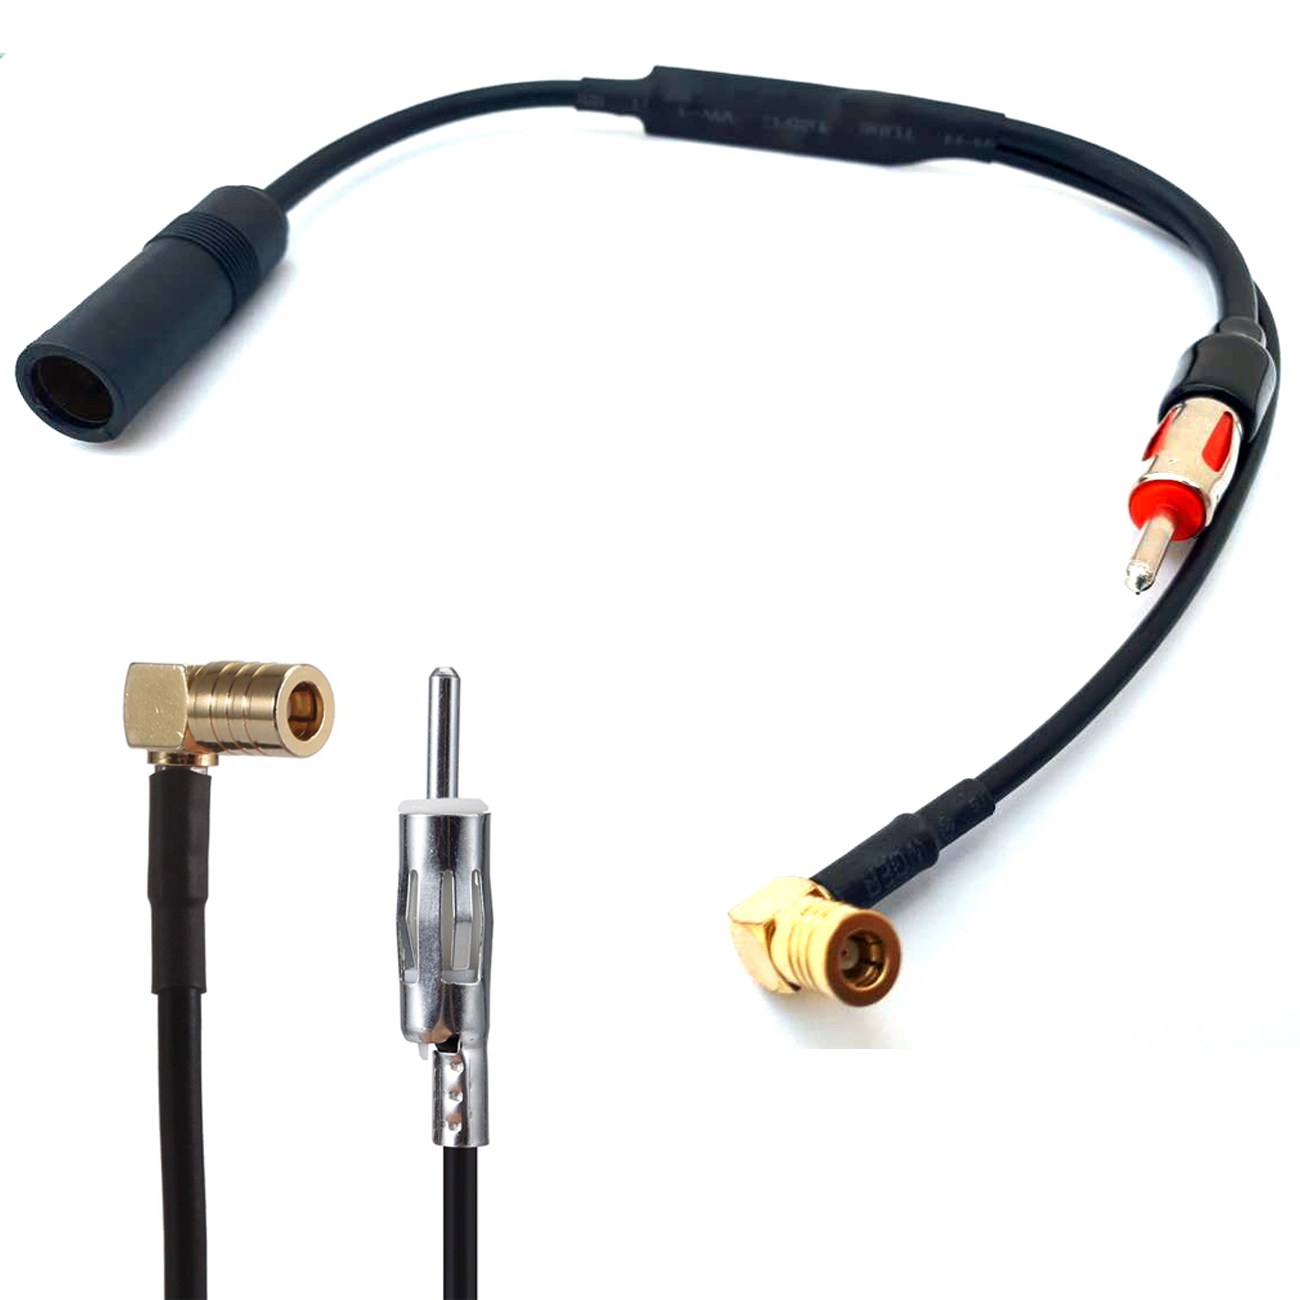 ✓ DAB Antenne fürs Auto DAB+ Adapter Aktiv Autoradio 5 Meter Digitalradio  SMB